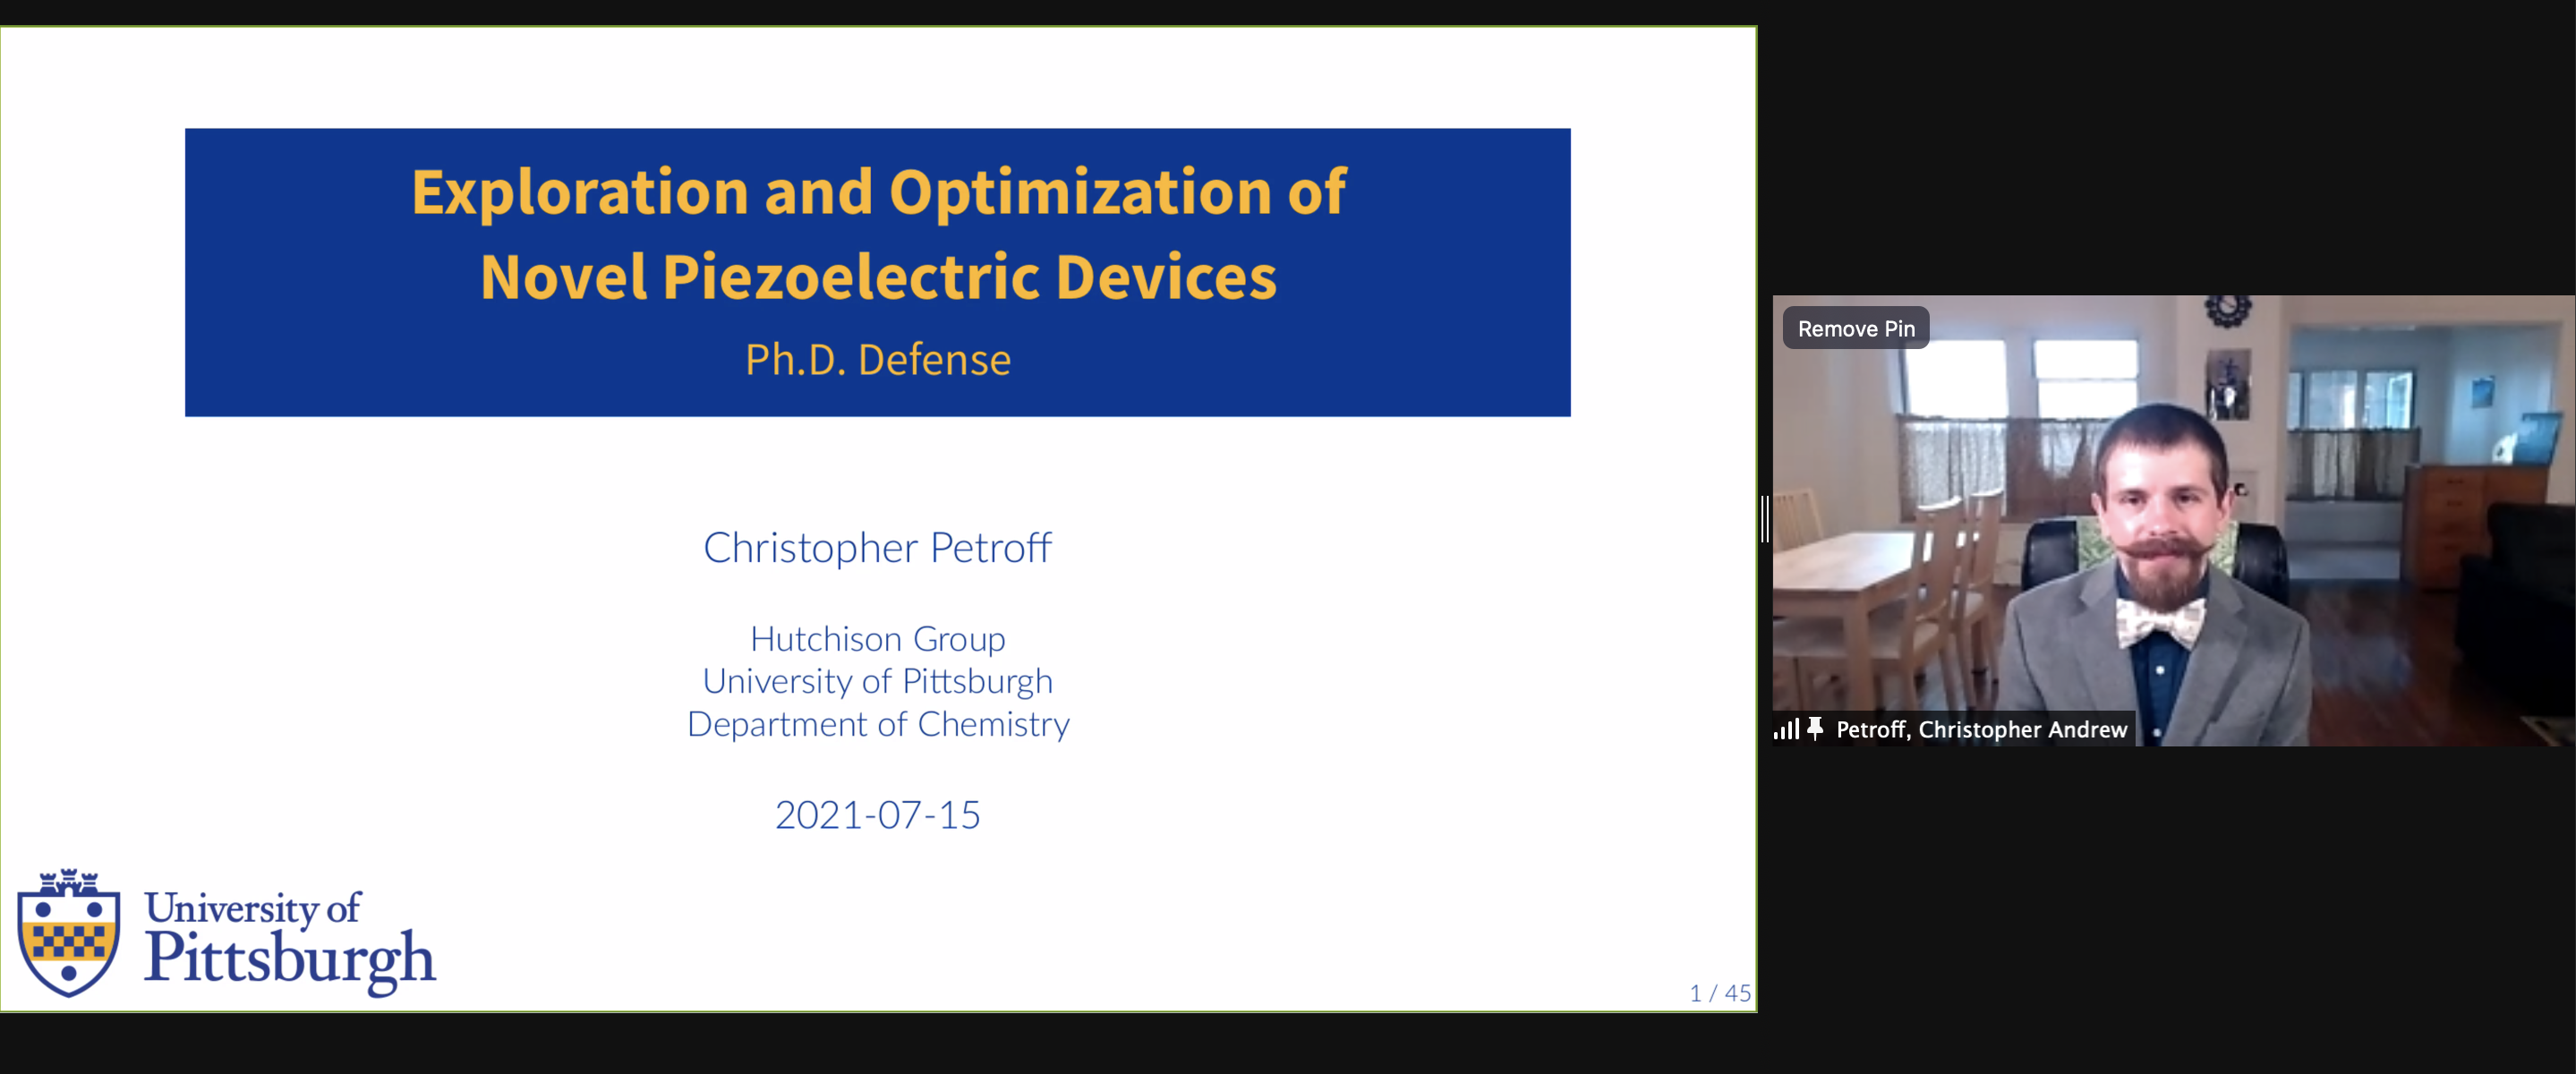 PhD defense of Chris Petroff